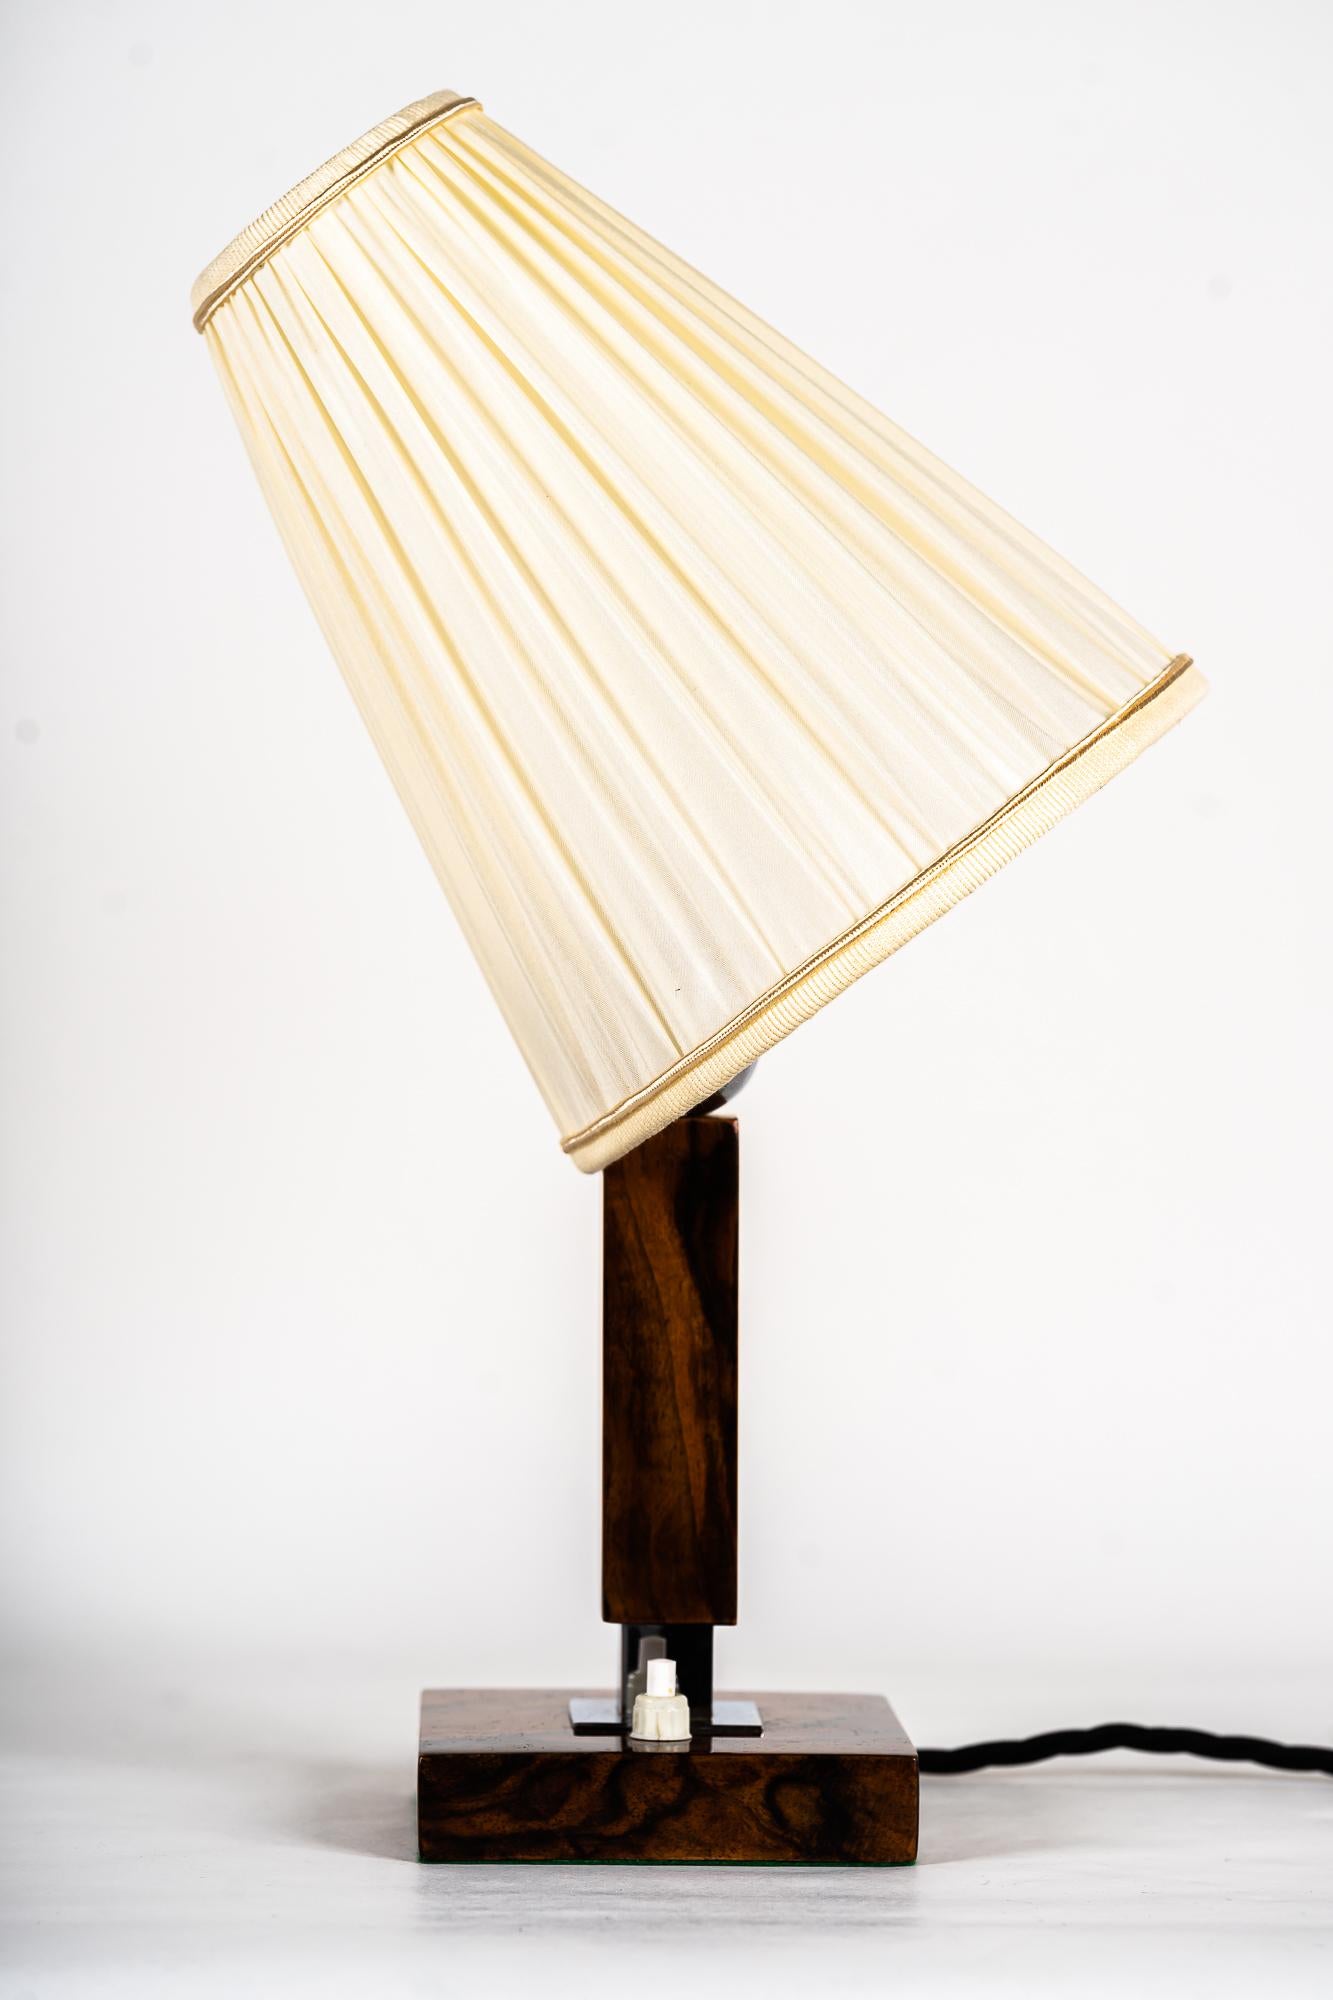 Holztischlampe mit Stoffschirm um 1950
Nickel poliert
Der Schirm wird ersetzt (neu).